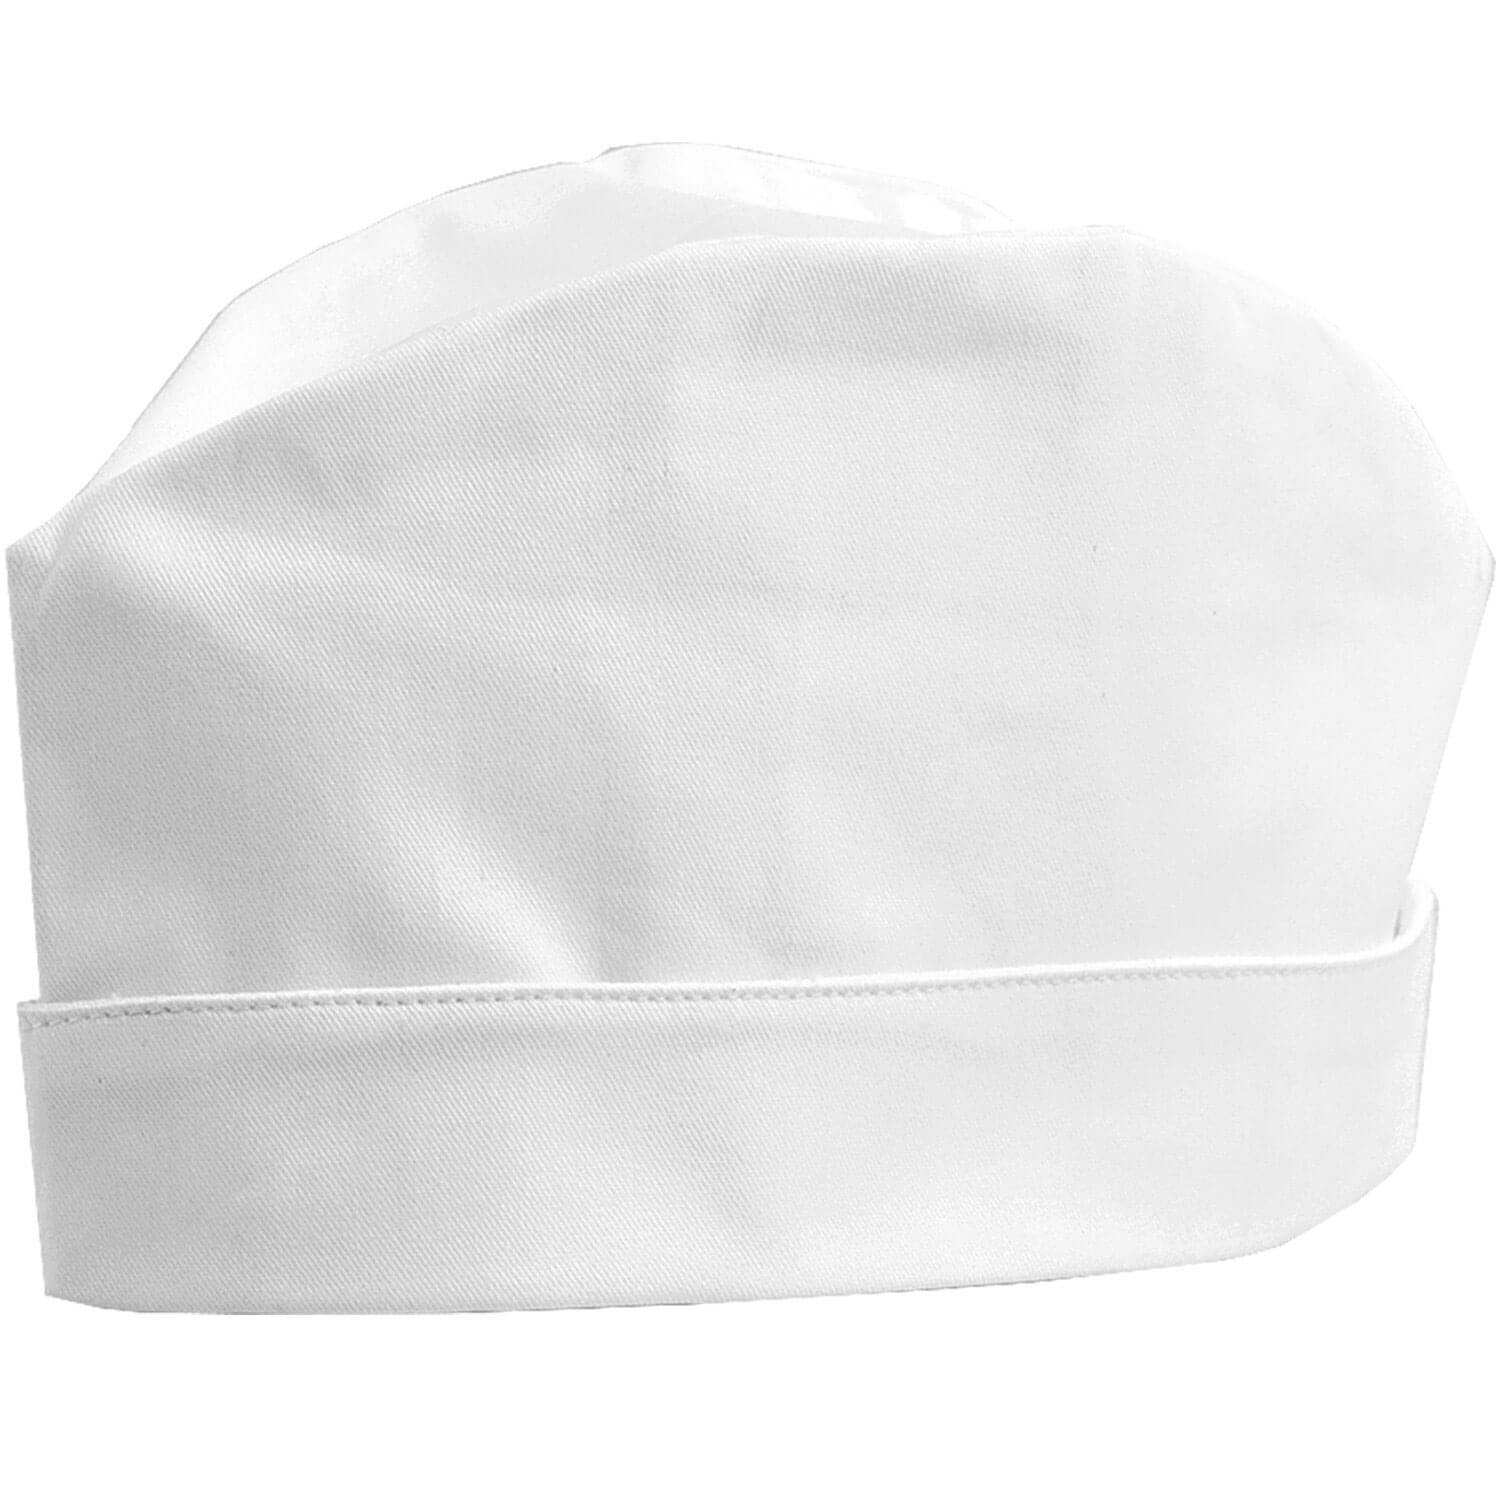 javlin chefs forage hat kitchen wear white 3019 WH J54